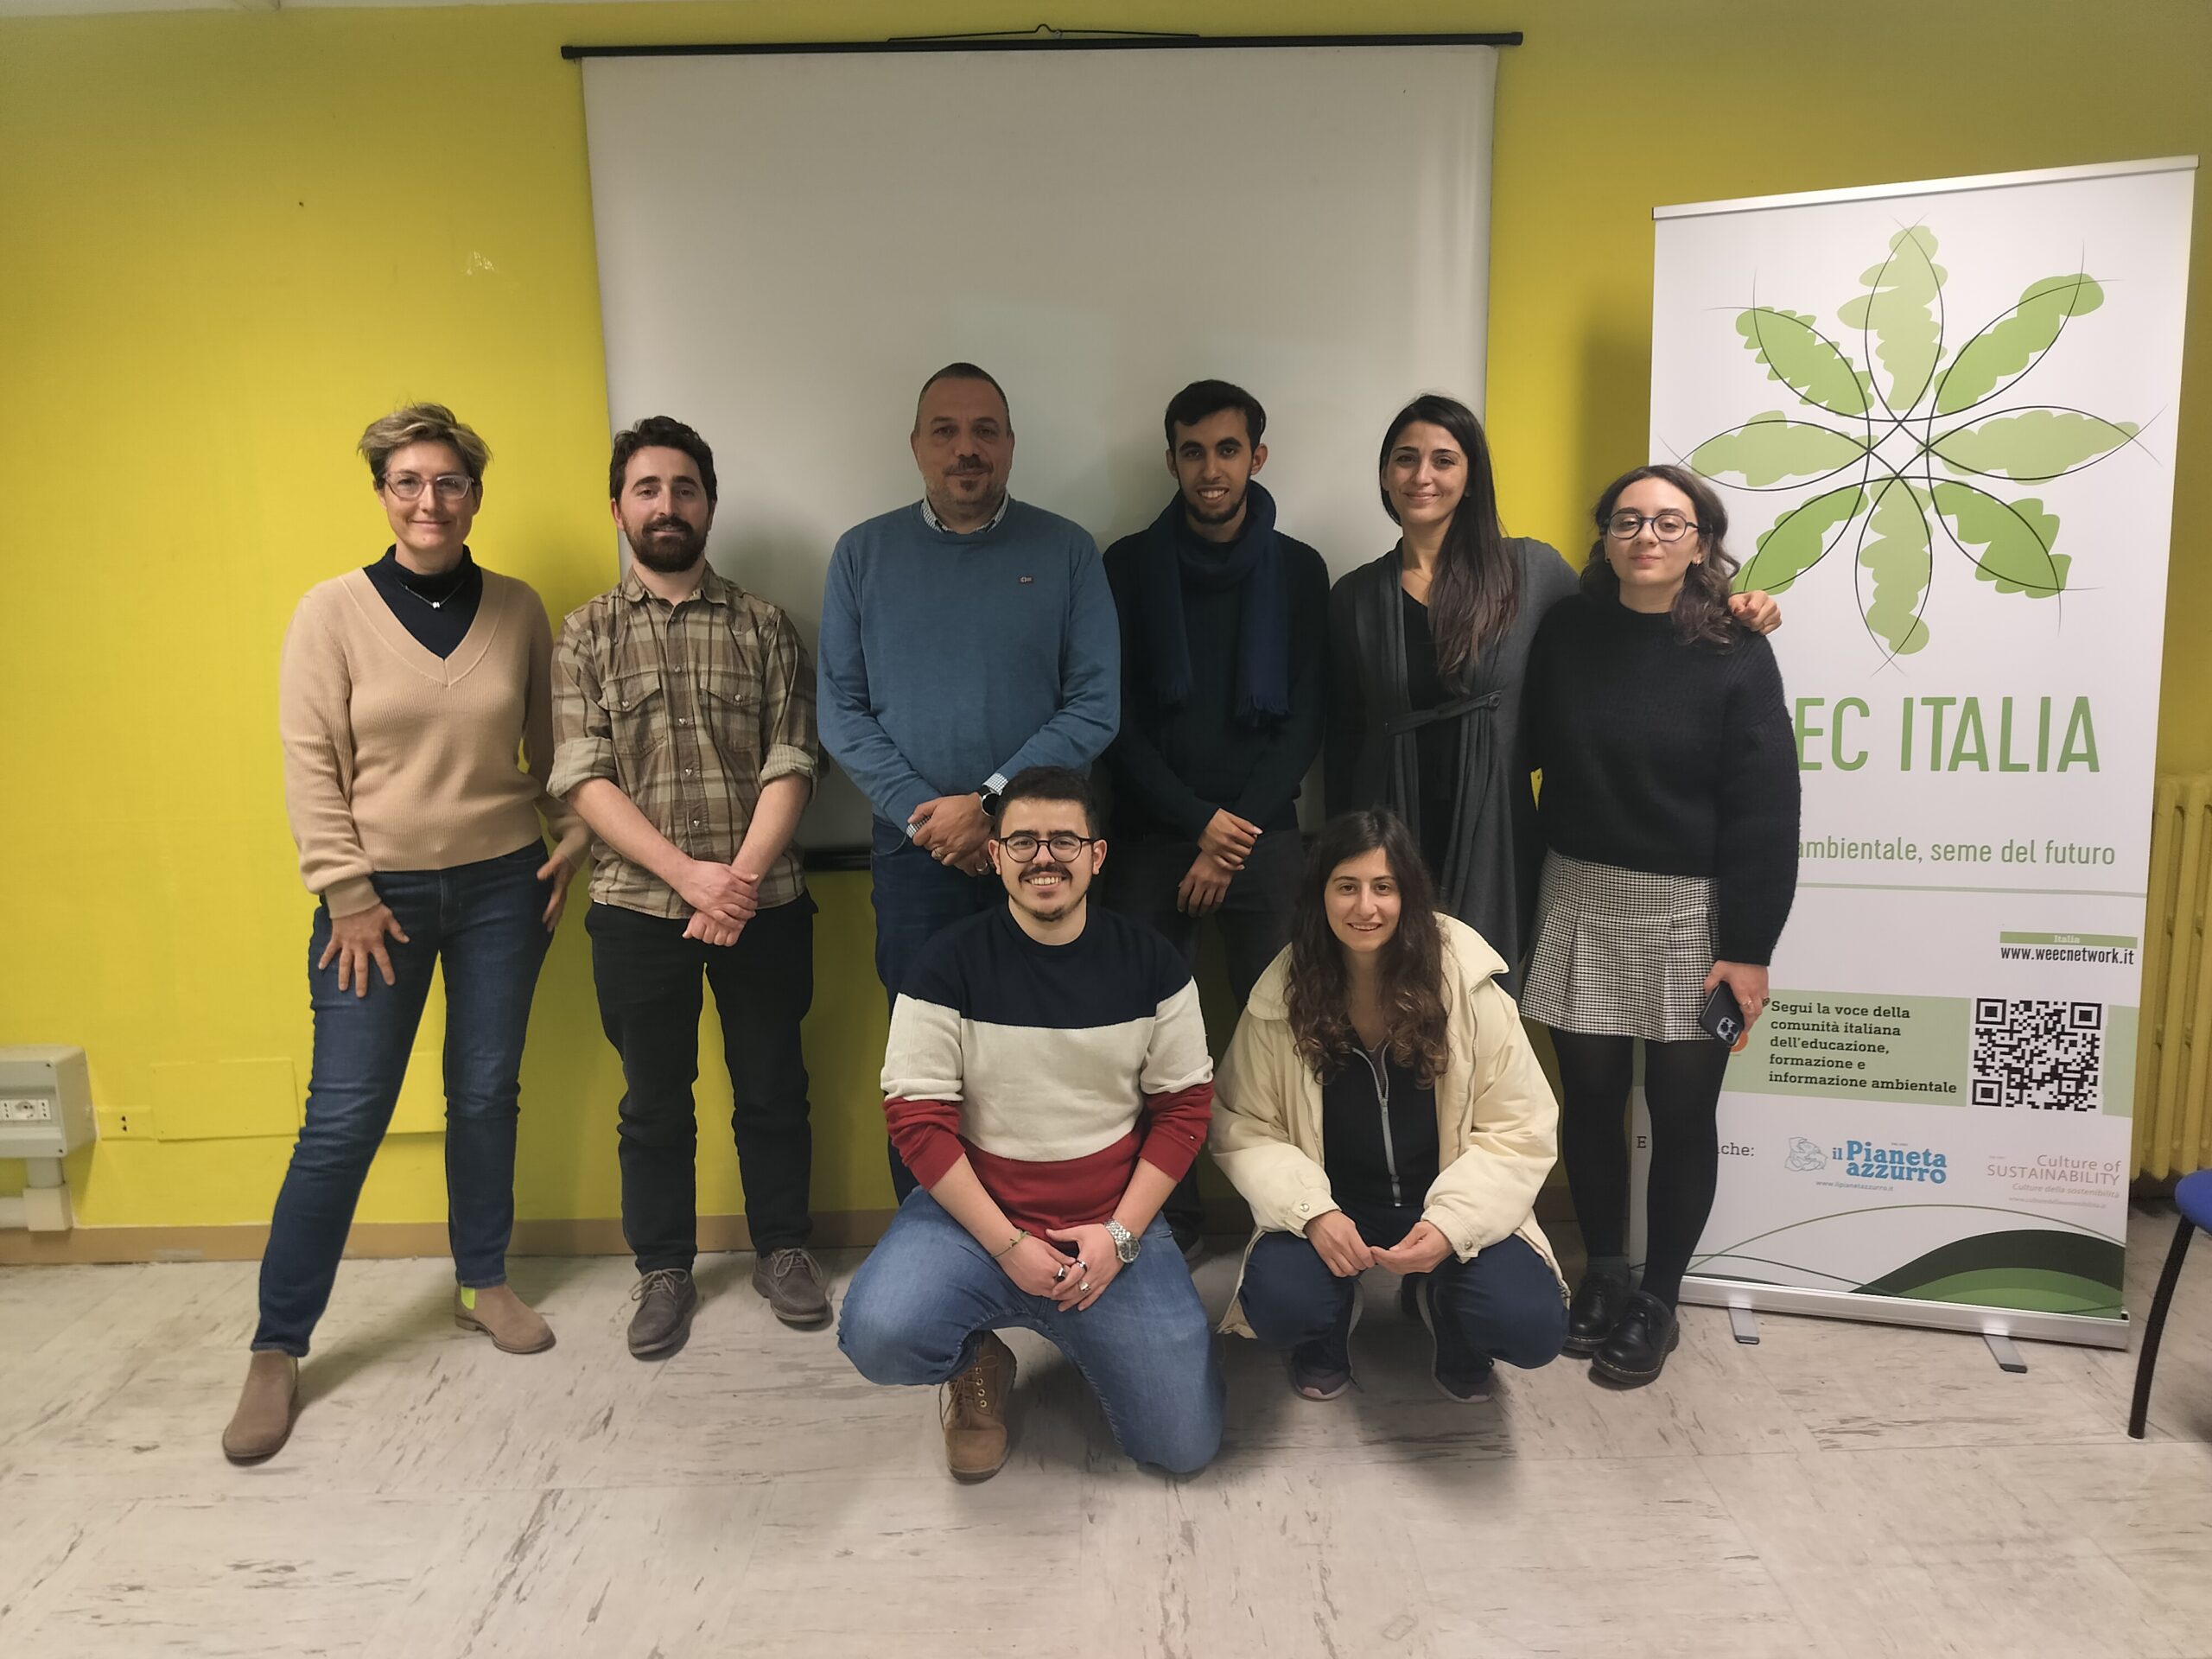 Ecomafie in Italia: dati allarmanti e soluzioni innovative emergono dall’incontro a Casa dell’ambiente